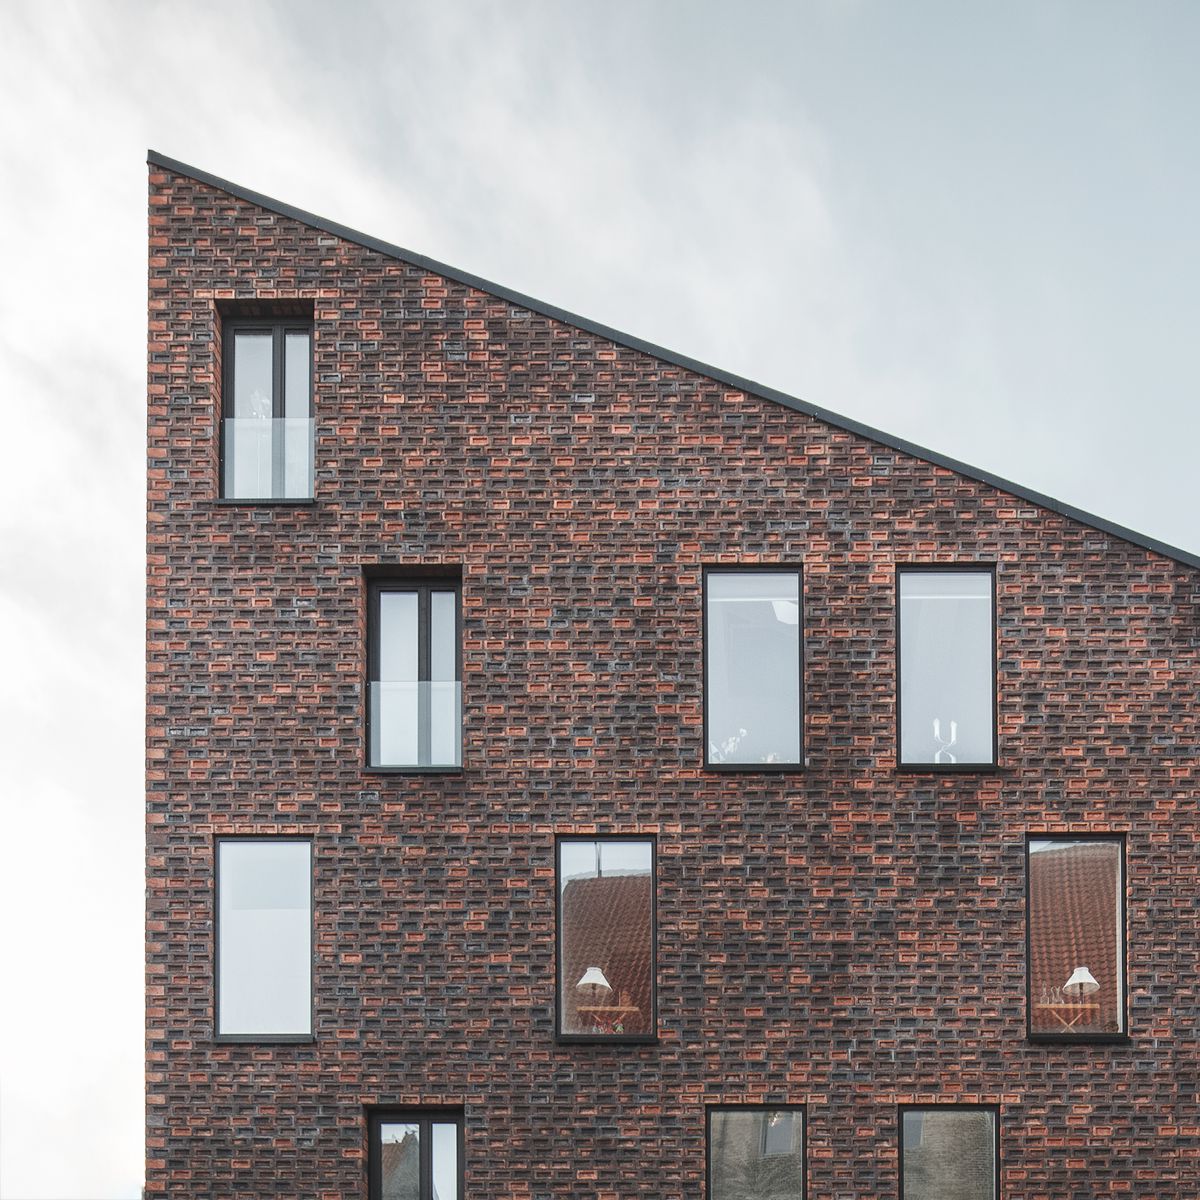 Kroyers Plad apartments in Copenhagen